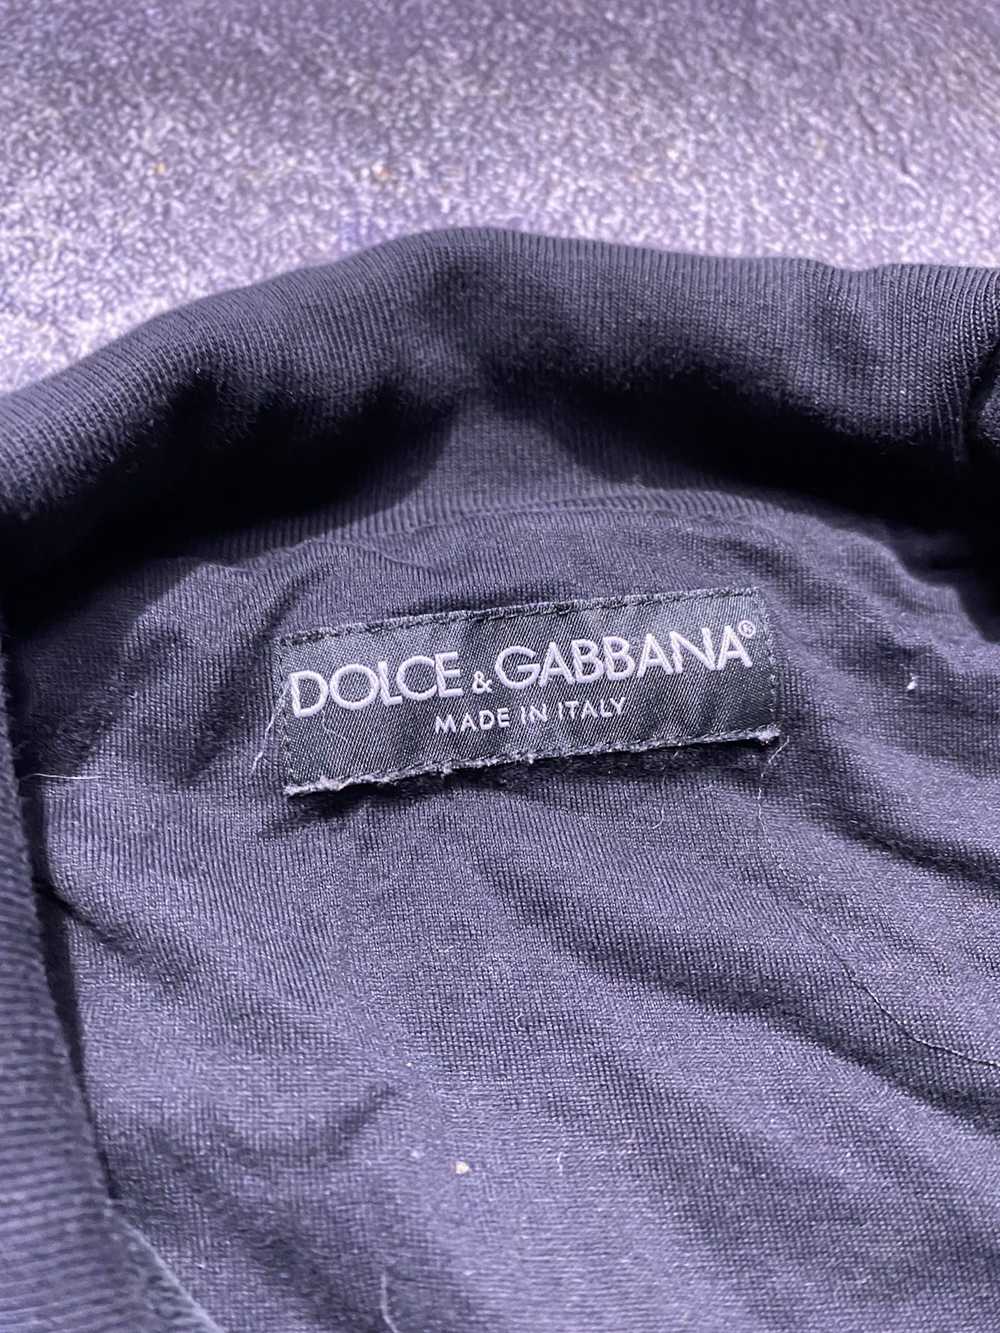 Dolce & Gabbana Dolce Gabbana Gym Collection Velo… - image 7